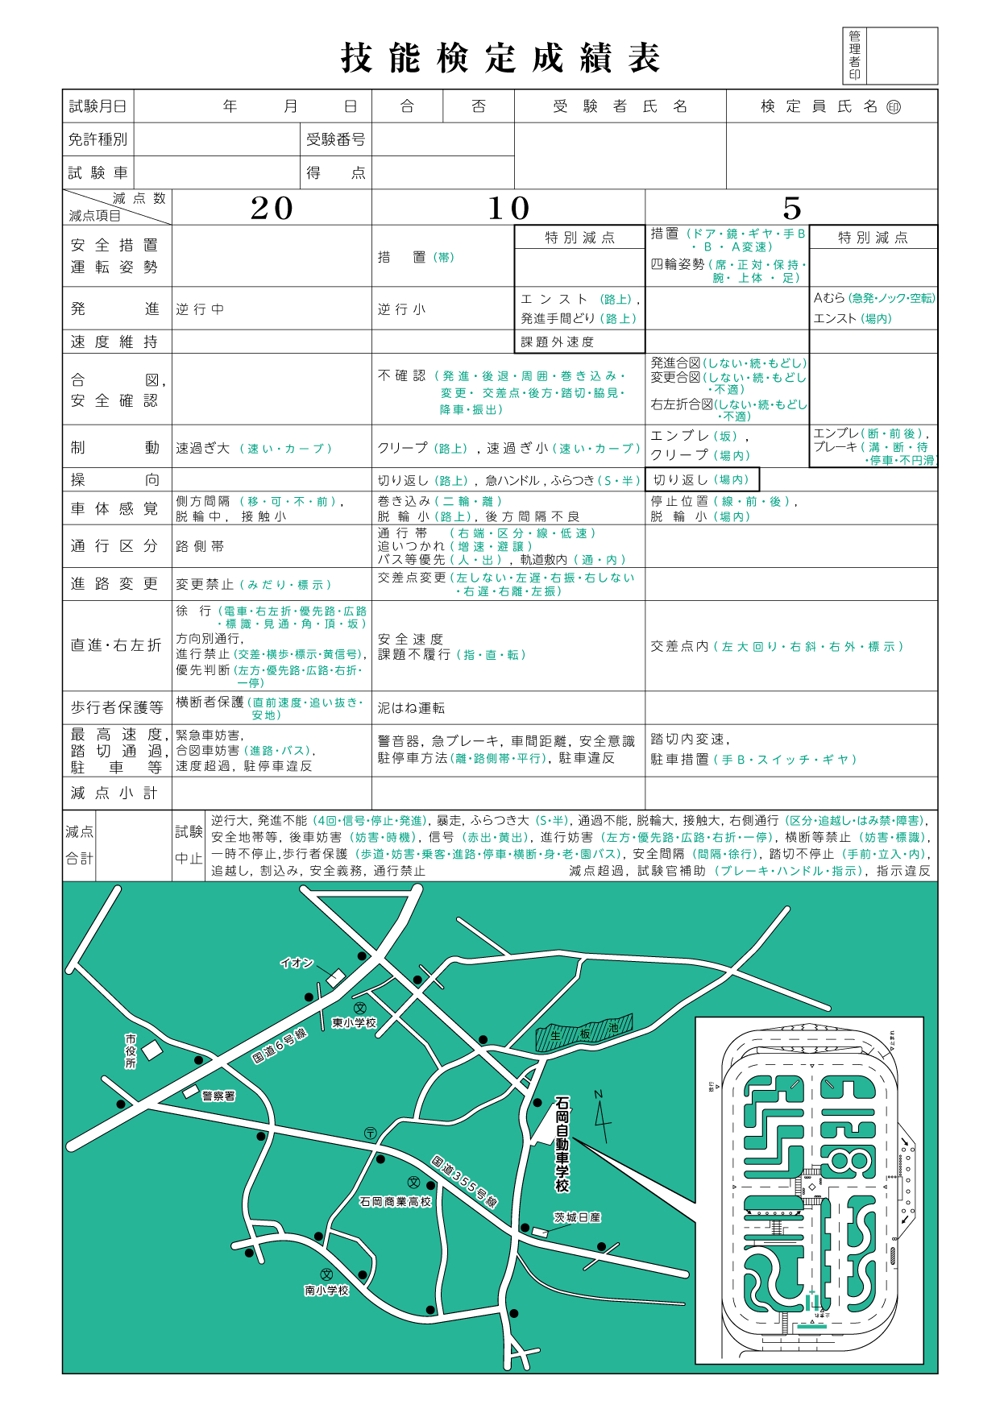 Wood Moonsさんの事例 実績 提案 教習所の書類のトレース 地図イラストあり Suzusuzu10 クラウドソーシング ランサーズ